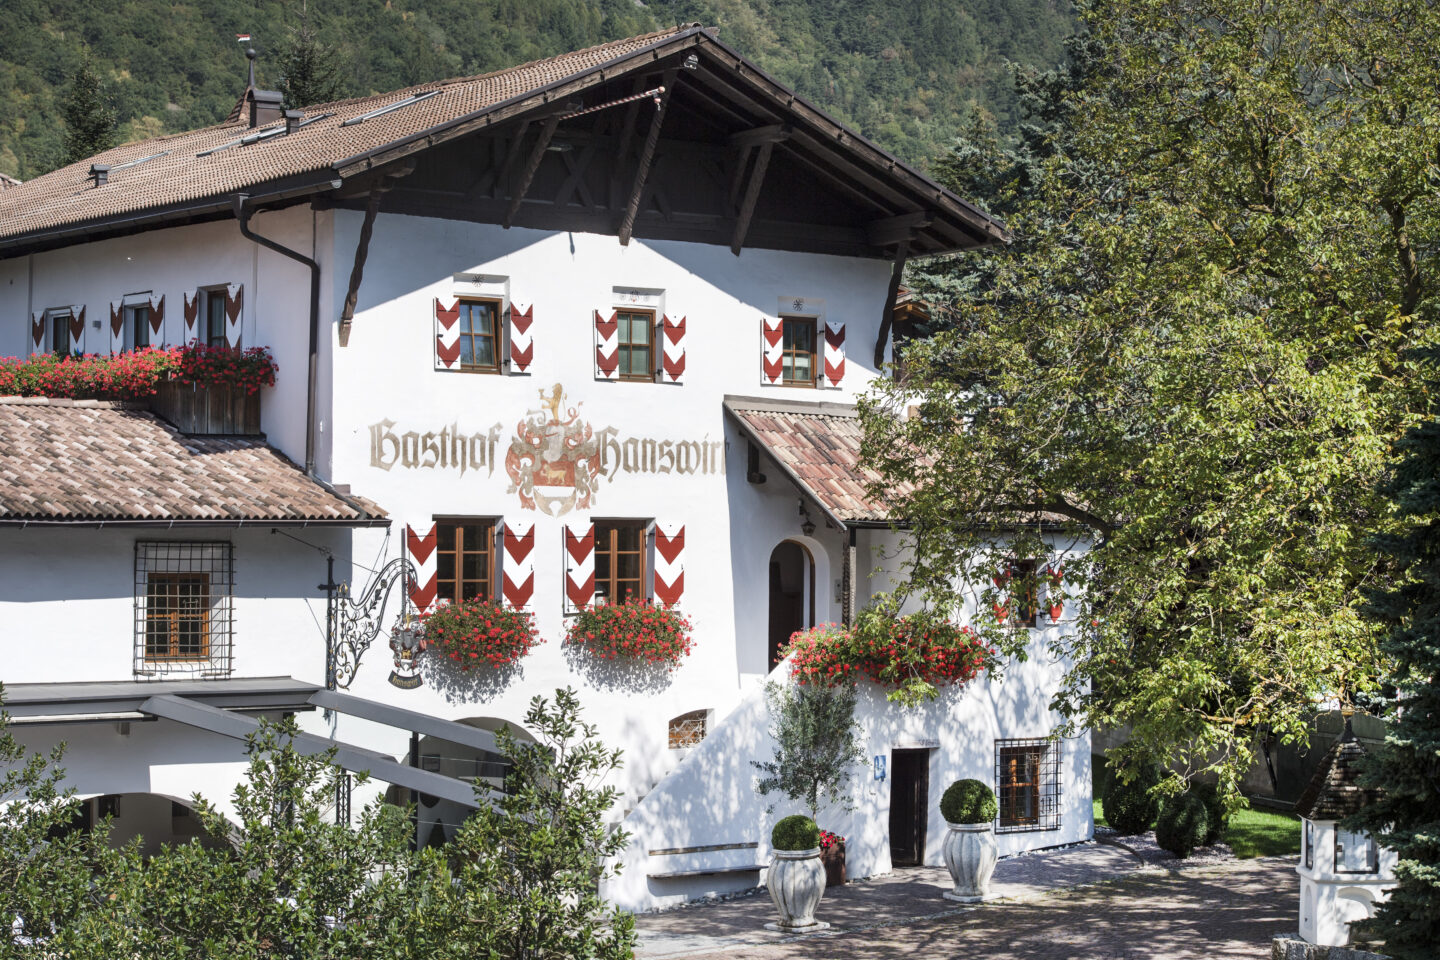 Hotel Hanswirt Rabland, Südtirol, Gentlemens Journey